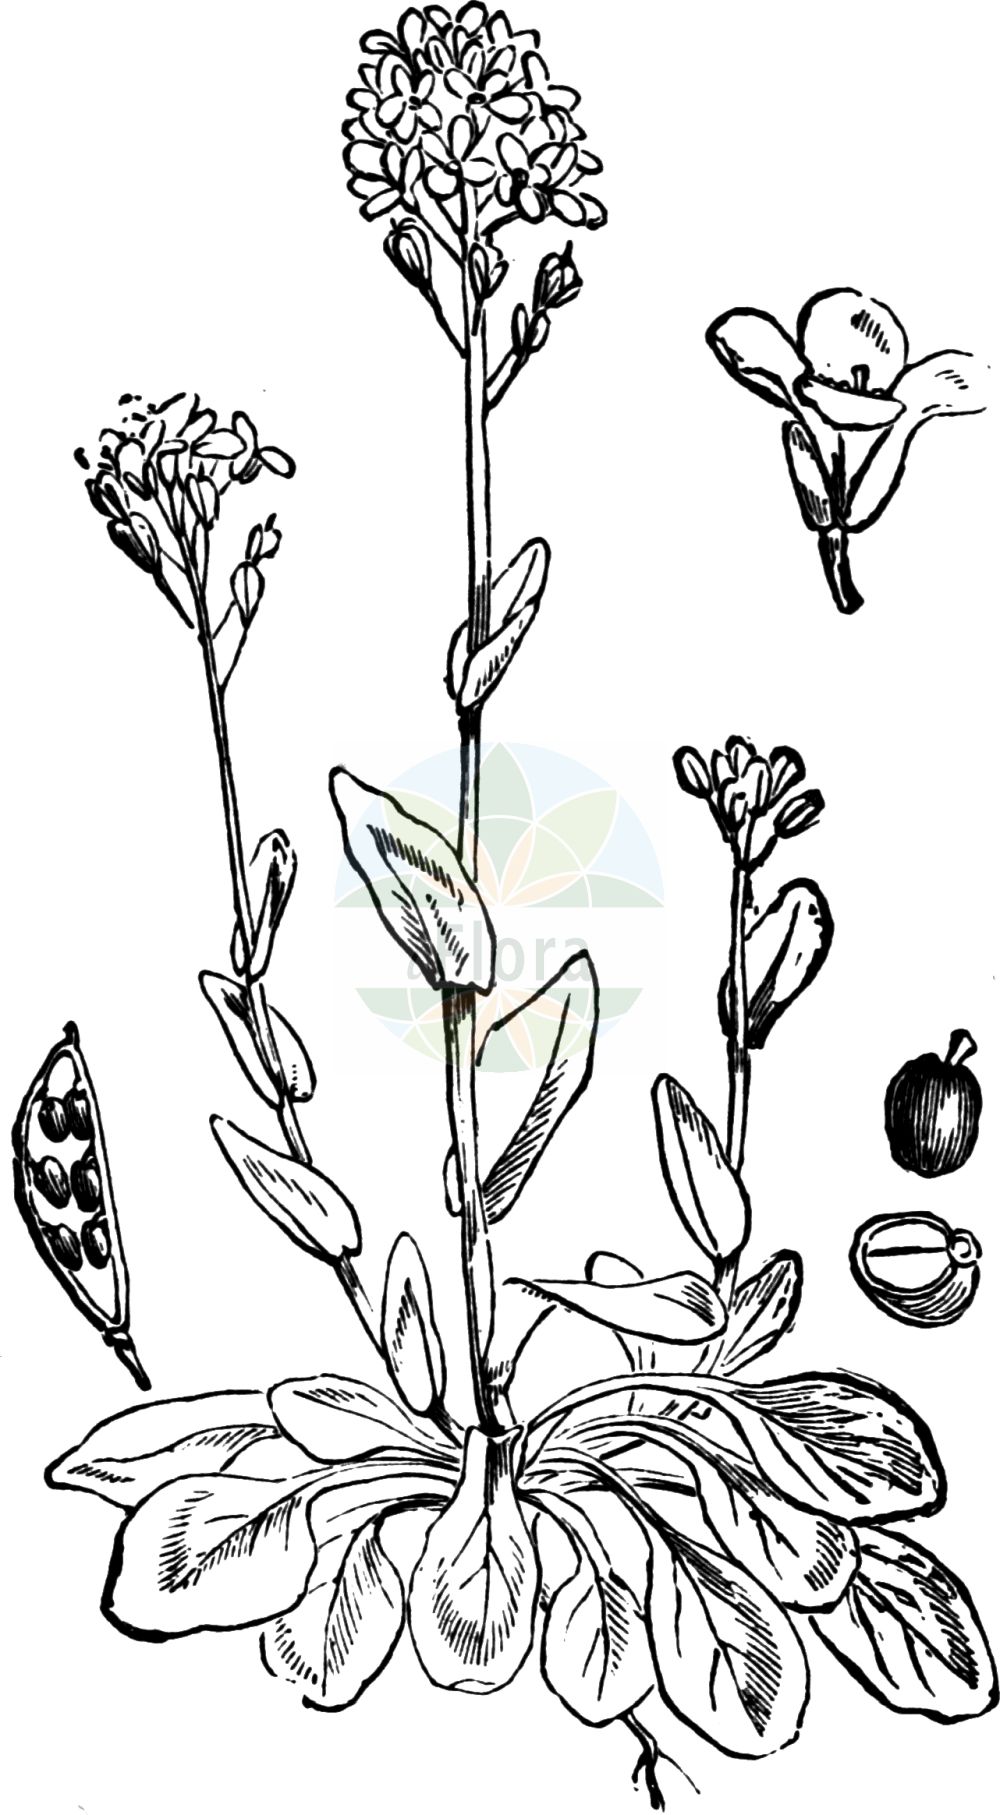 Historische Abbildung von Noccaea caerulescens (Gebirgs-Hellerkraut - Alpine Penny-cress). Das Bild zeigt Blatt, Bluete, Frucht und Same. ---- Historical Drawing of Noccaea caerulescens (Gebirgs-Hellerkraut - Alpine Penny-cress). The image is showing leaf, flower, fruit and seed.(Noccaea caerulescens,Gebirgs-Hellerkraut,Alpine Penny-cress,Noccaea caerulescens,Thlaspi caerulescens,Thlaspi calaminare,Thlaspi guadinianum,Thlaspi lereschii,Thlaspi mureti,Thlaspi pratulorum,Thlaspi rhaeticum,Thlaspi suecicum,Thlaspi tallonis,Thlaspi villarsianum,Thlaspi virgatum,Thlaspi vogesiacum,Thlaspi vulcanorum,Gebirgs-Hellerkraut,Galmei-Hellerkraut,Alpine Penny-cress,Alpine Pennygrass,Noccaea,Hellerkraut,Brassicaceae,Kreuzblütler,Cabbage family,Blatt,Bluete,Frucht,Same,leaf,flower,fruit,seed,Fitch et al. (1880))